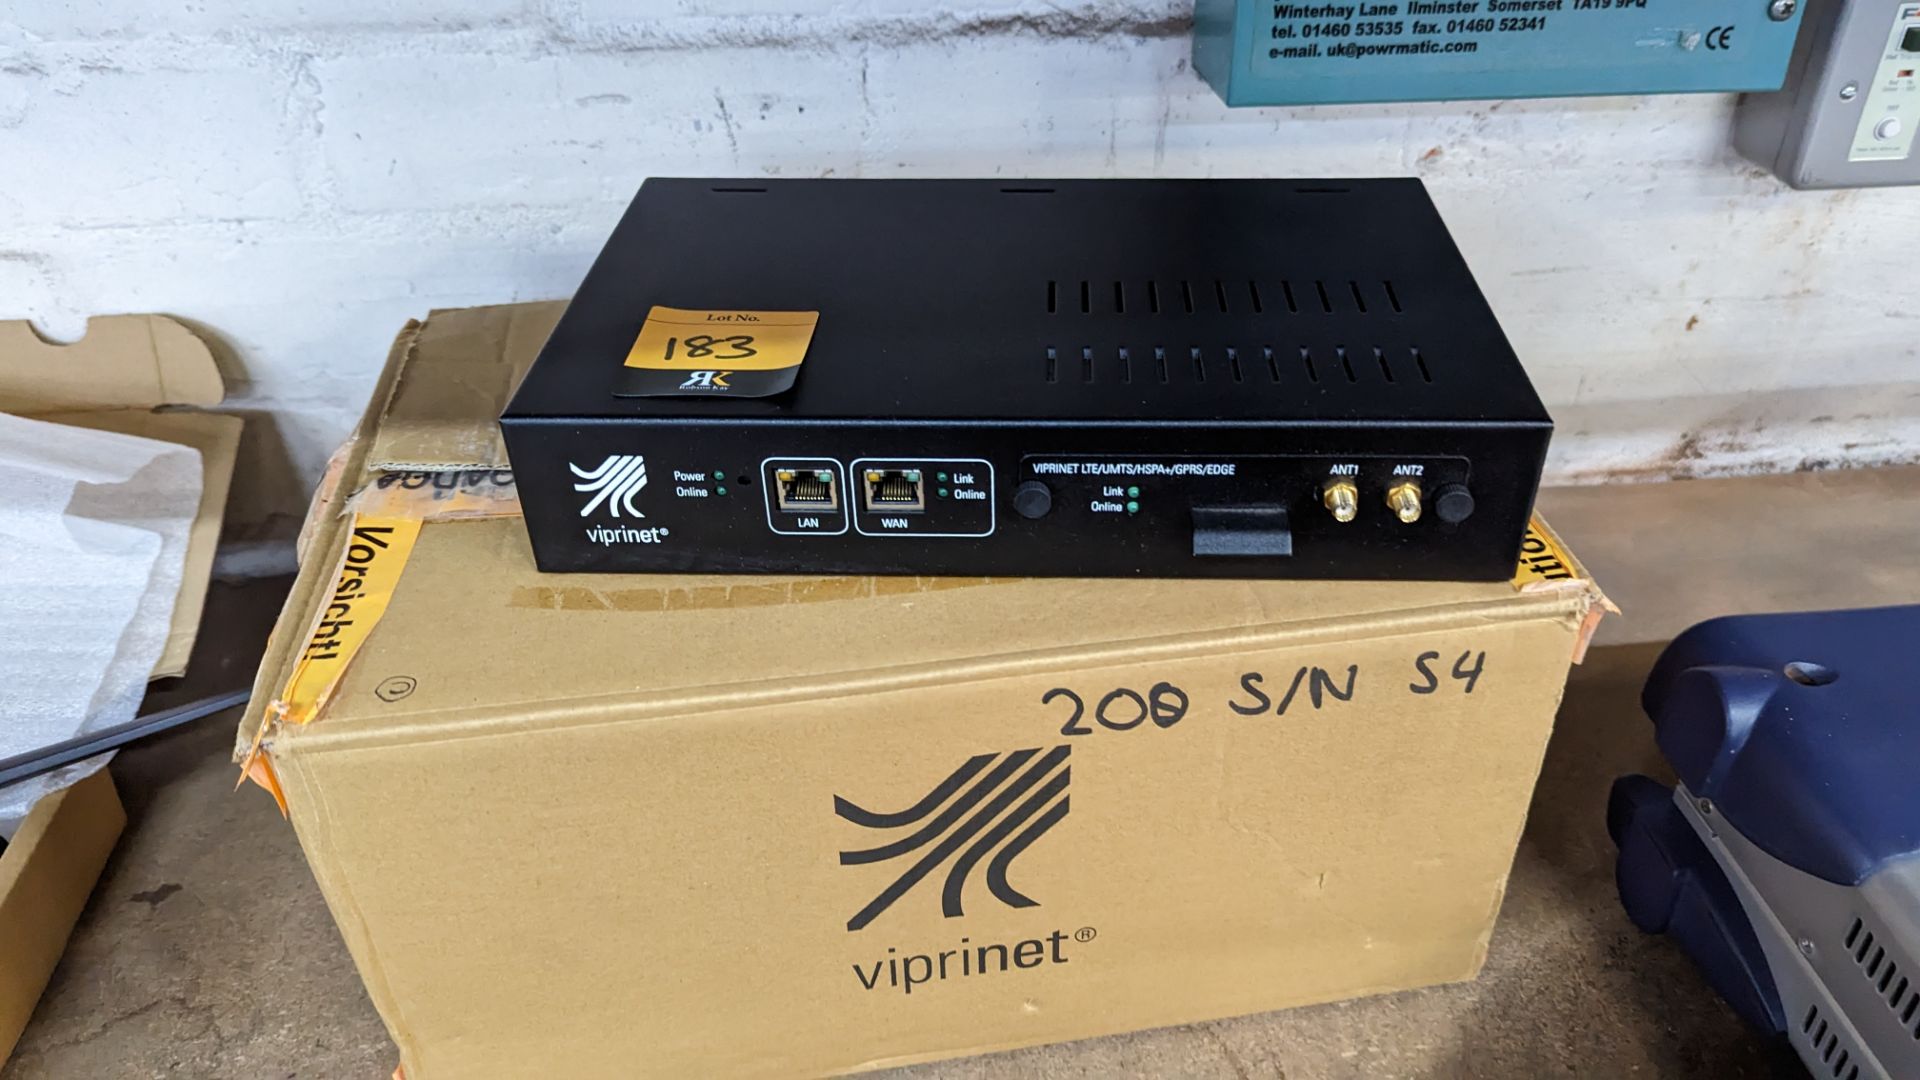 Viprinet multi-channel VPN, model 200 - Image 2 of 6